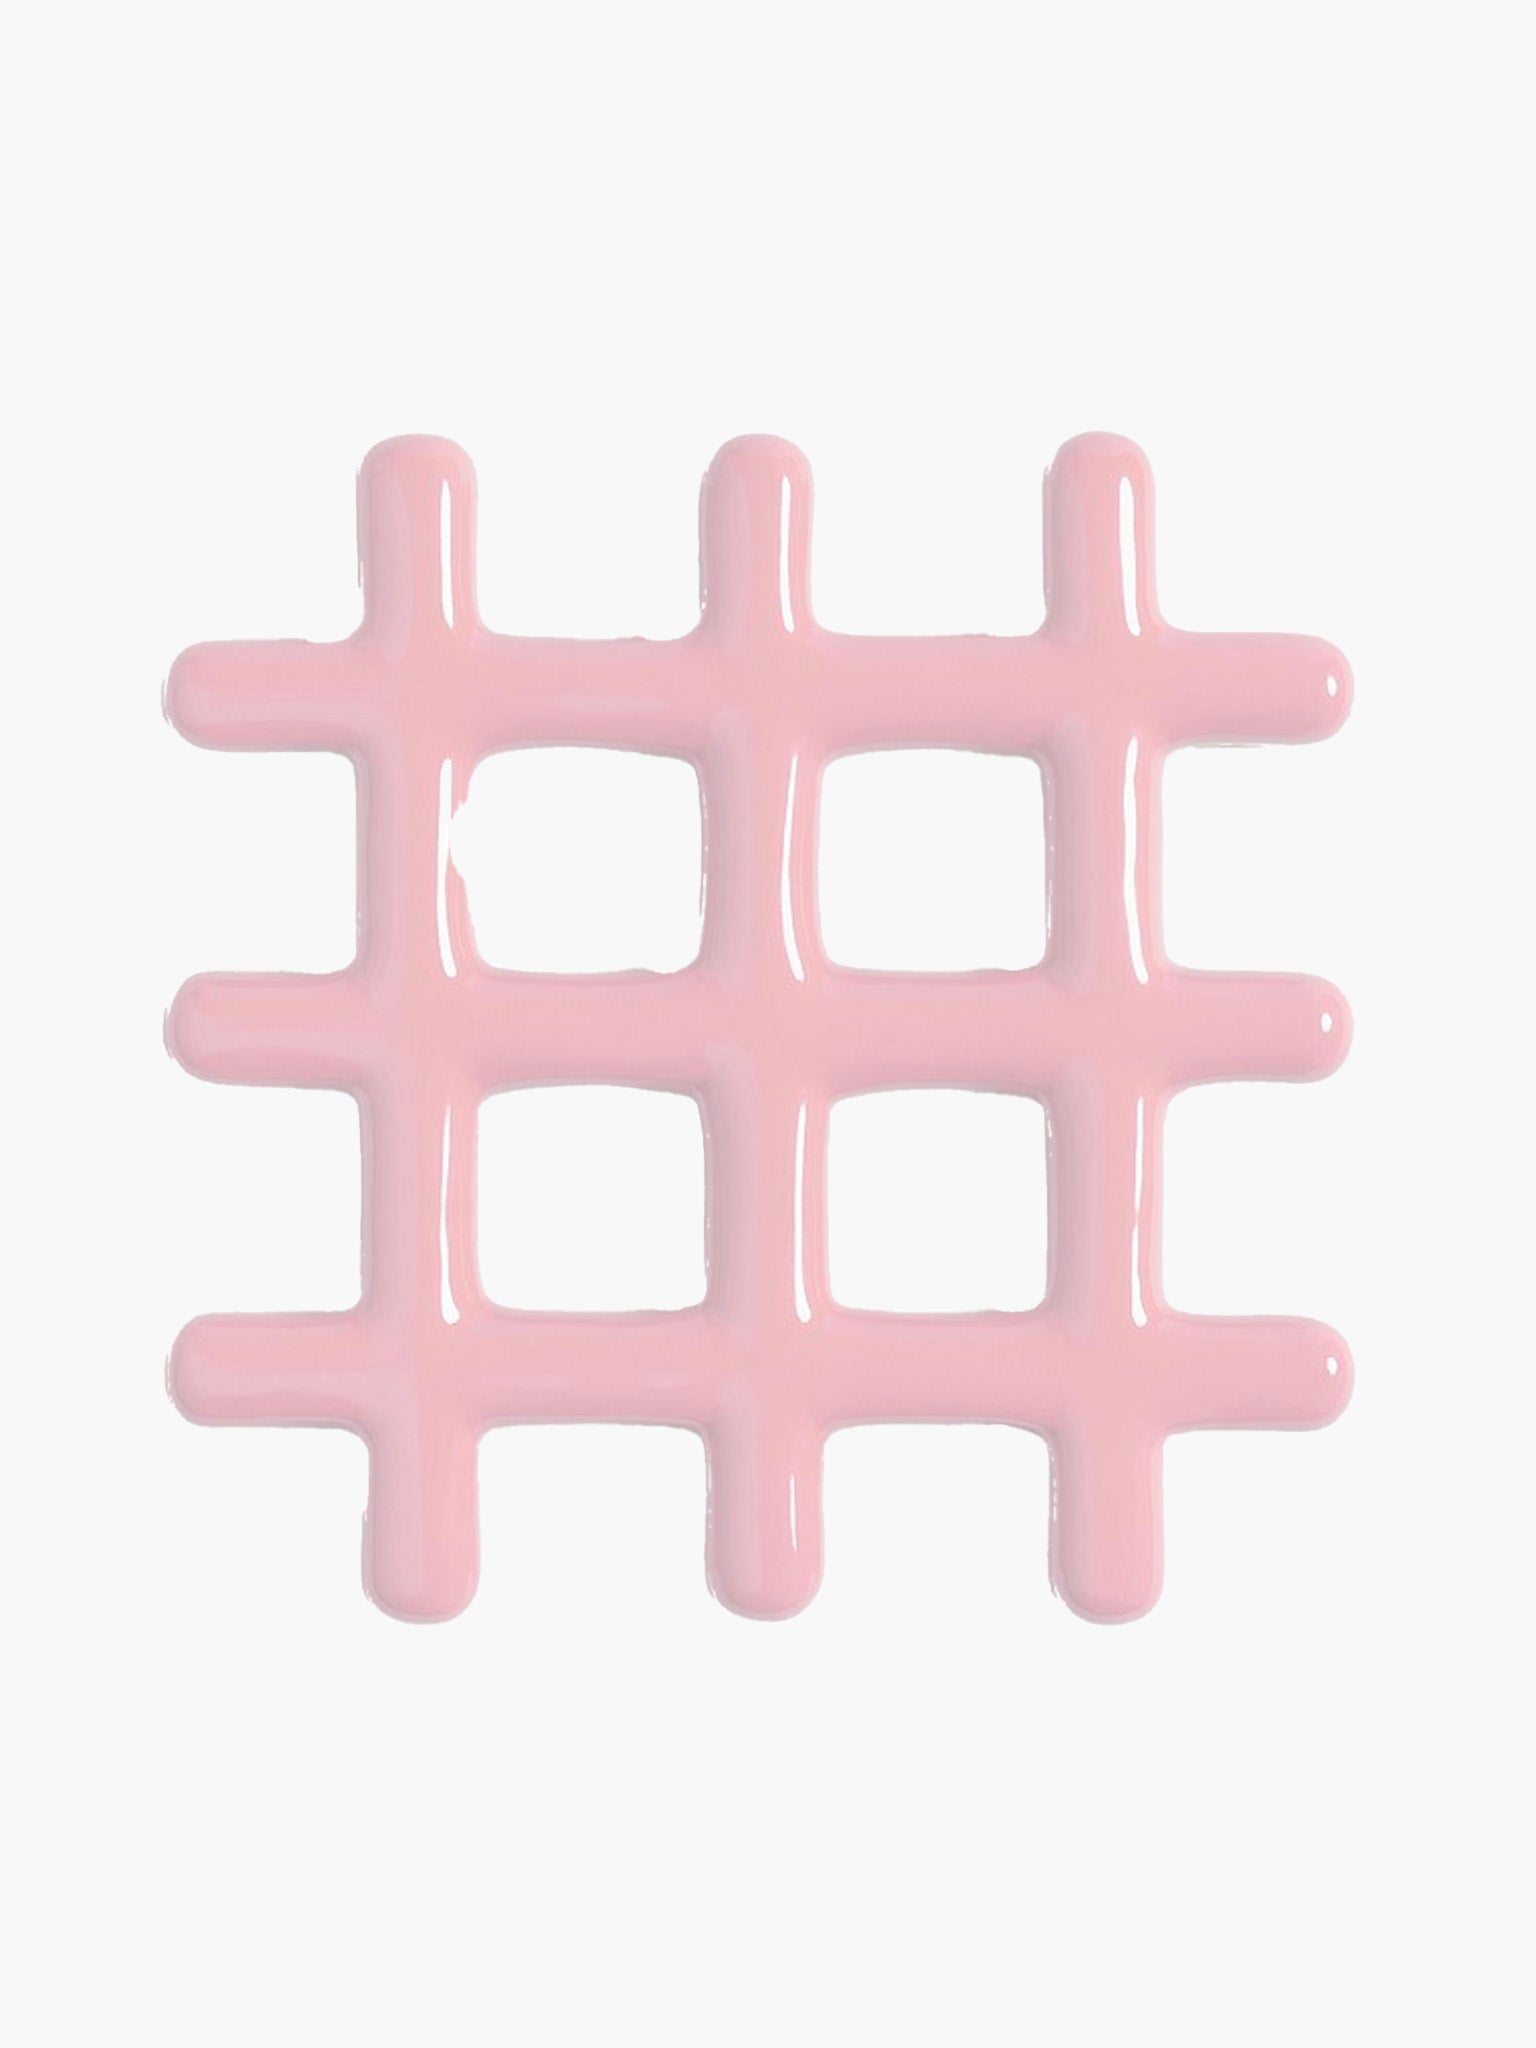 Trivet Grid - Pink